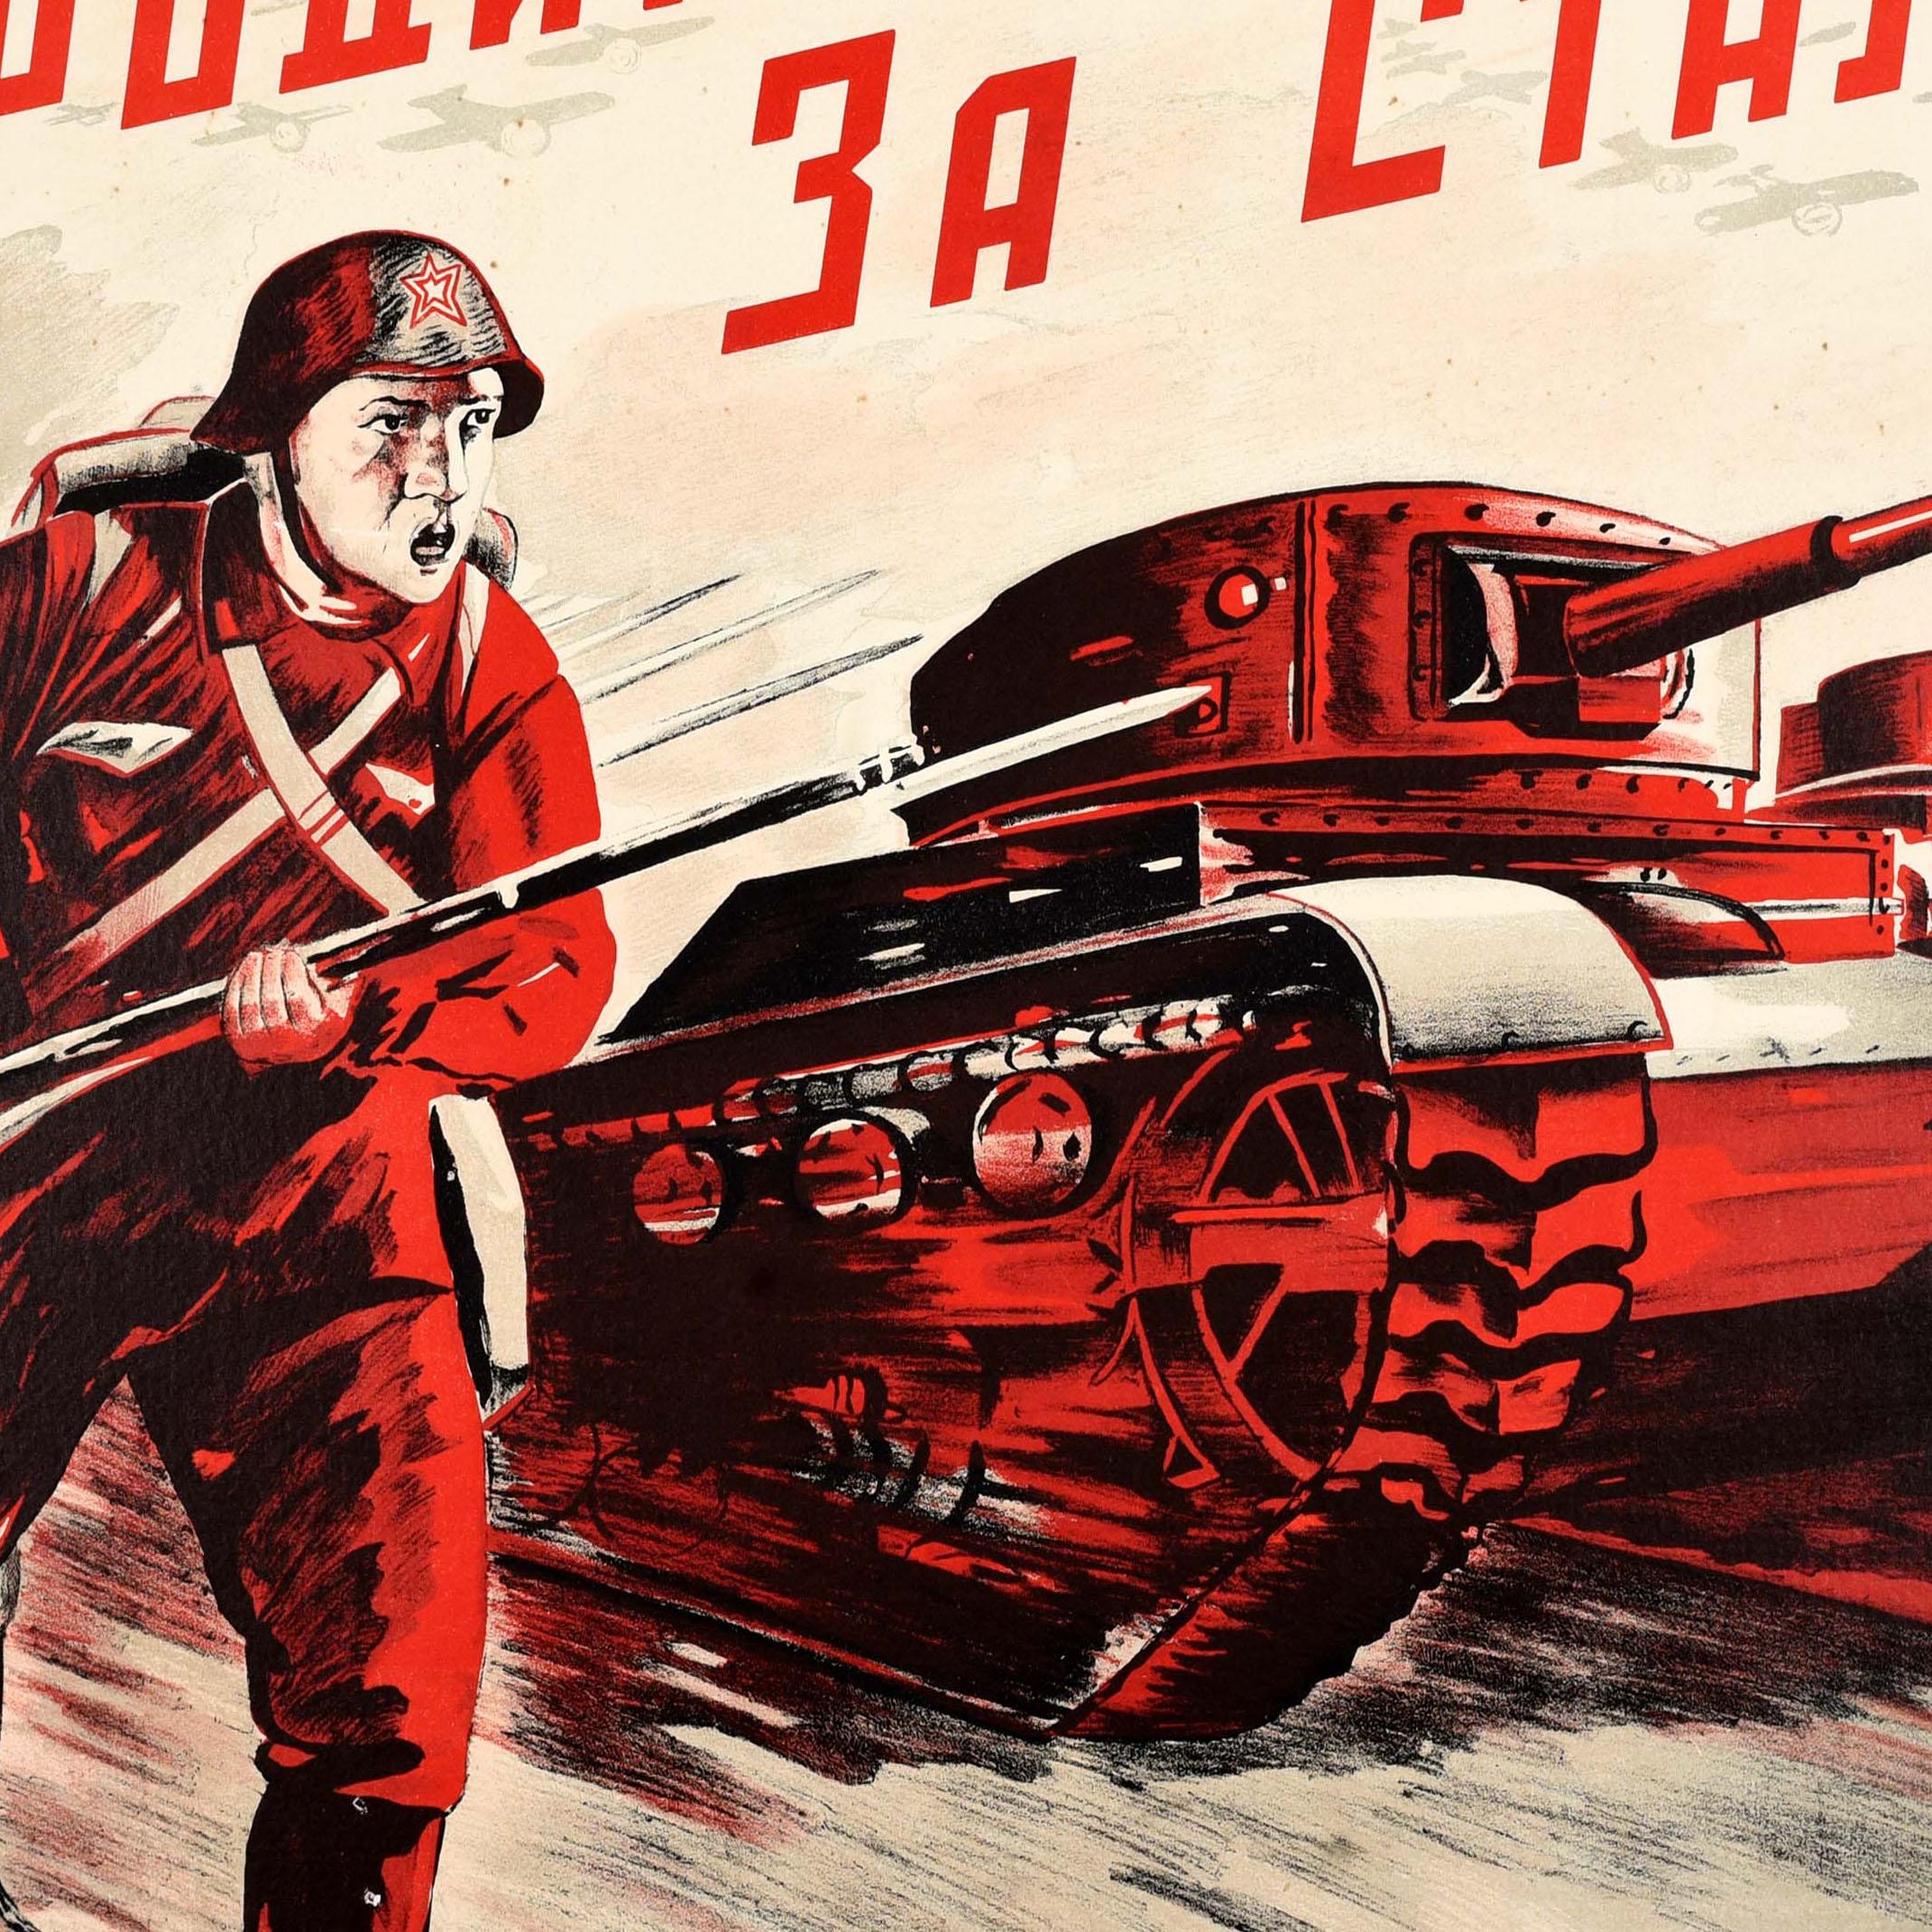 Seltenes originales sowjetisches Propagandaplakat aus dem Zweiten Weltkrieg - Für das Vaterland! Für Stalin! / За Родину! За Сталина! - zeigt einen Trupp Soldaten mit Bajonettgewehren, die neben einer Reihe von Militärpanzern vorwärts stürmen, mit